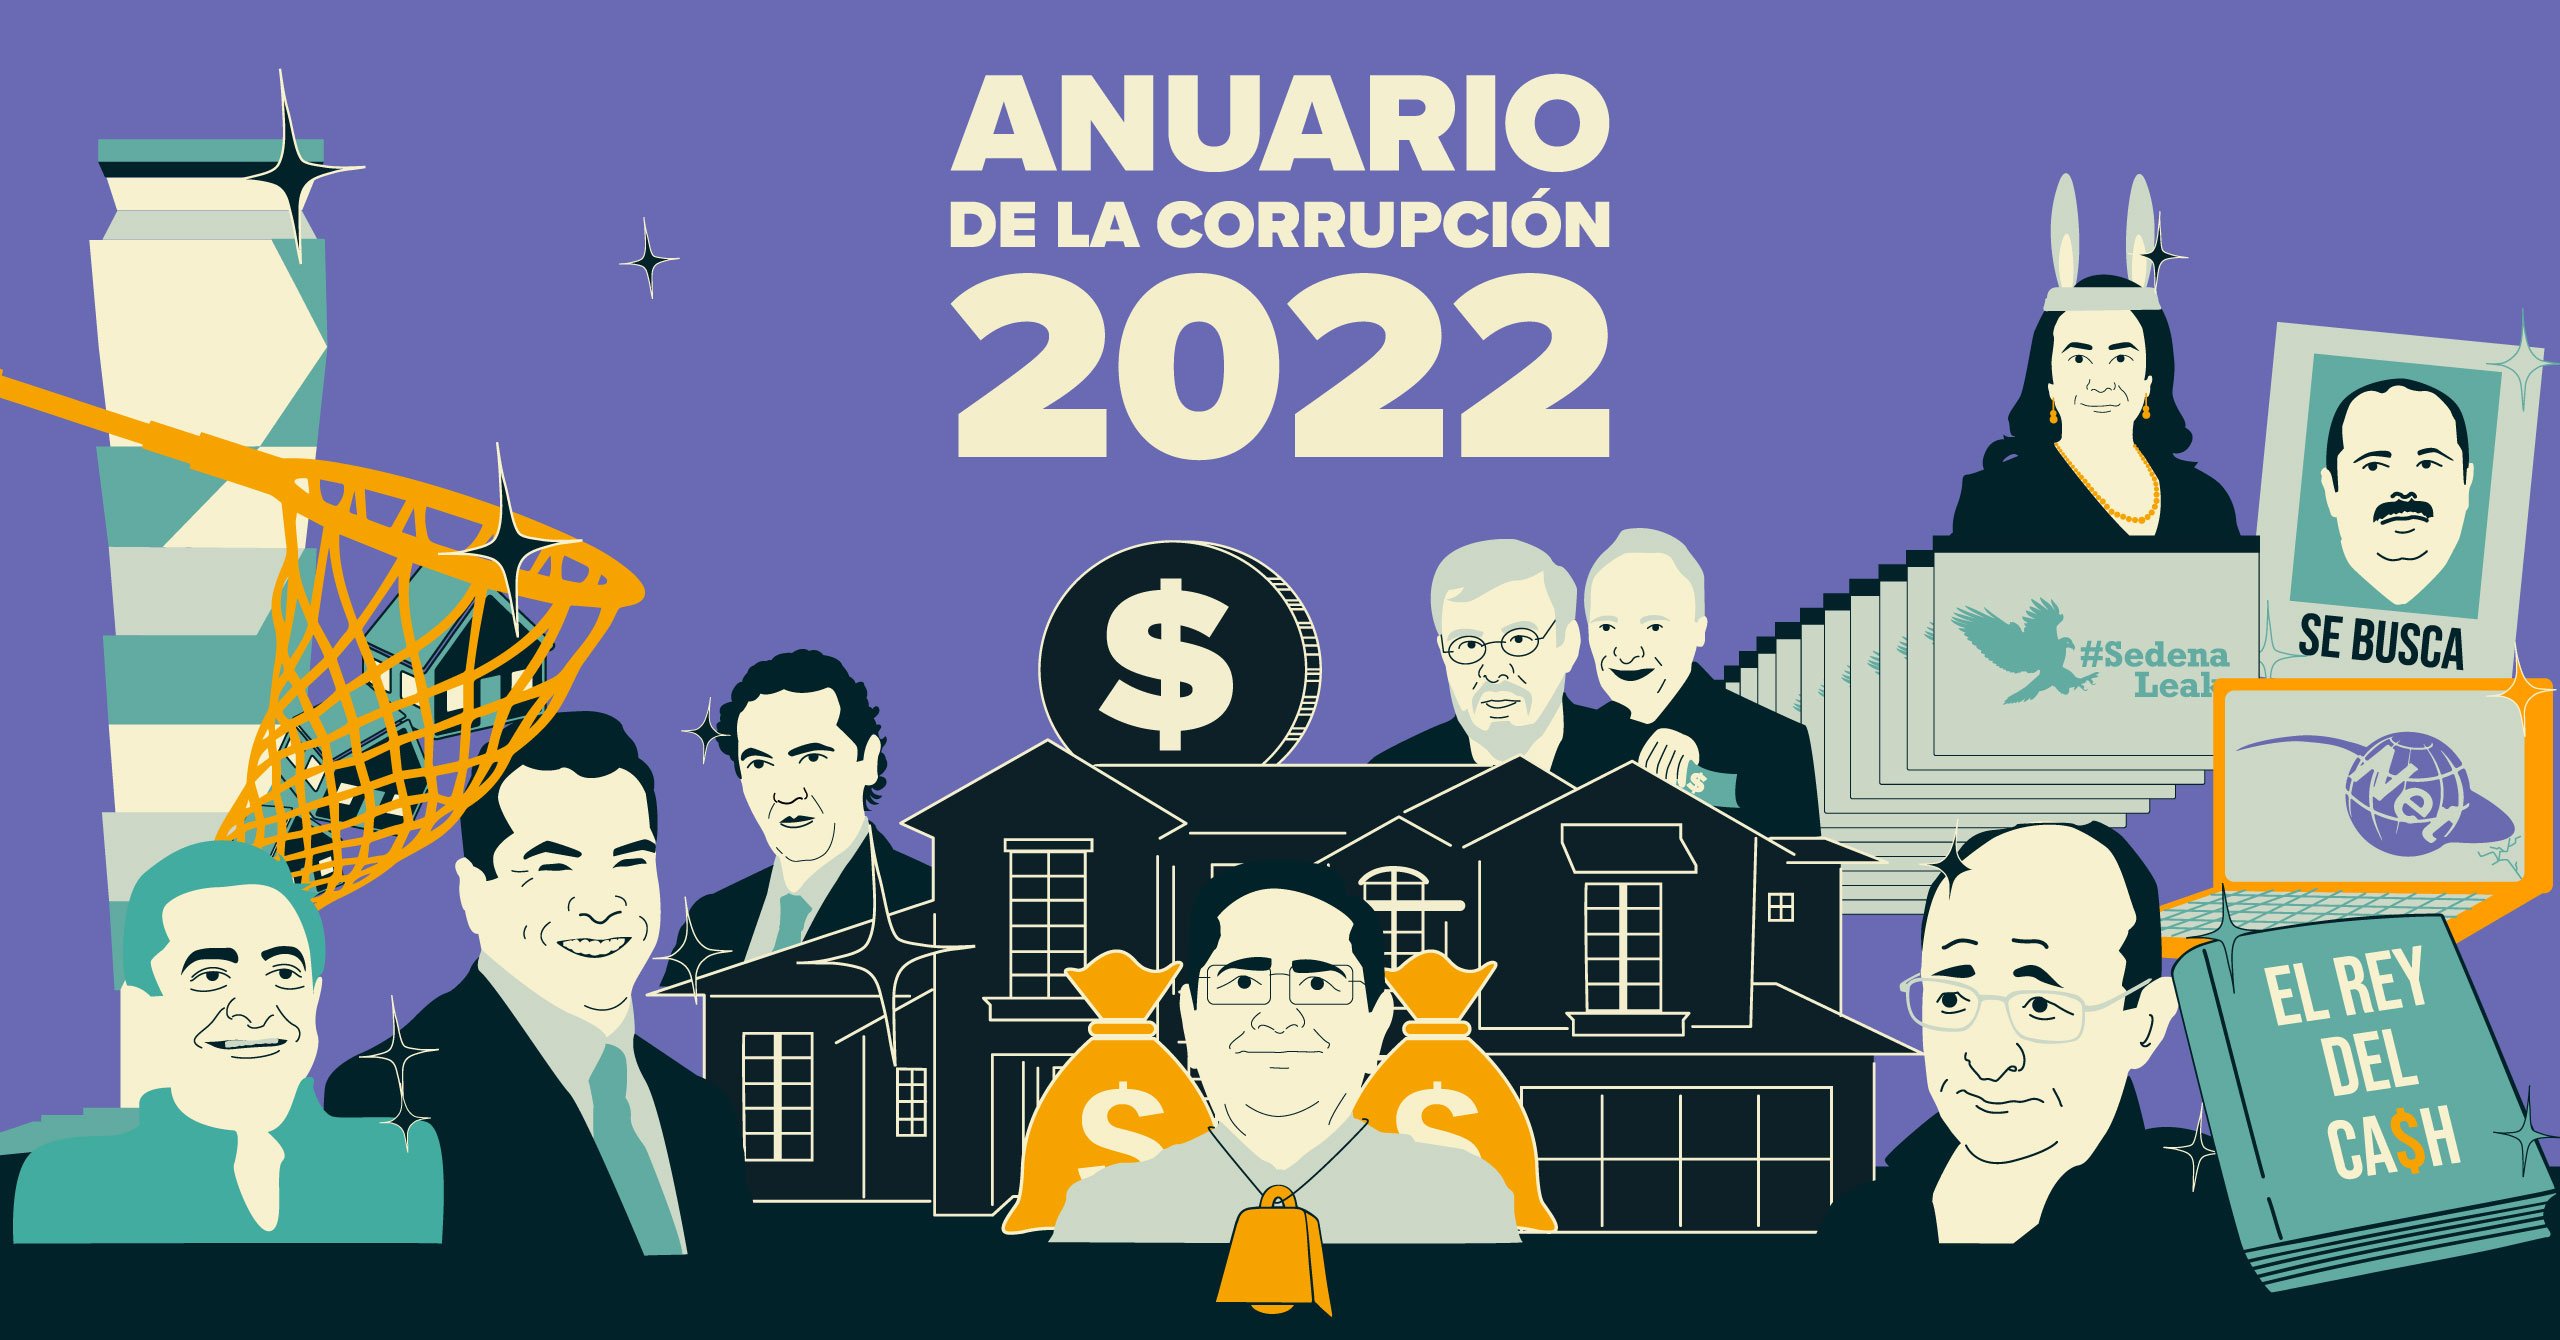 Anuario de la corrupción 2022